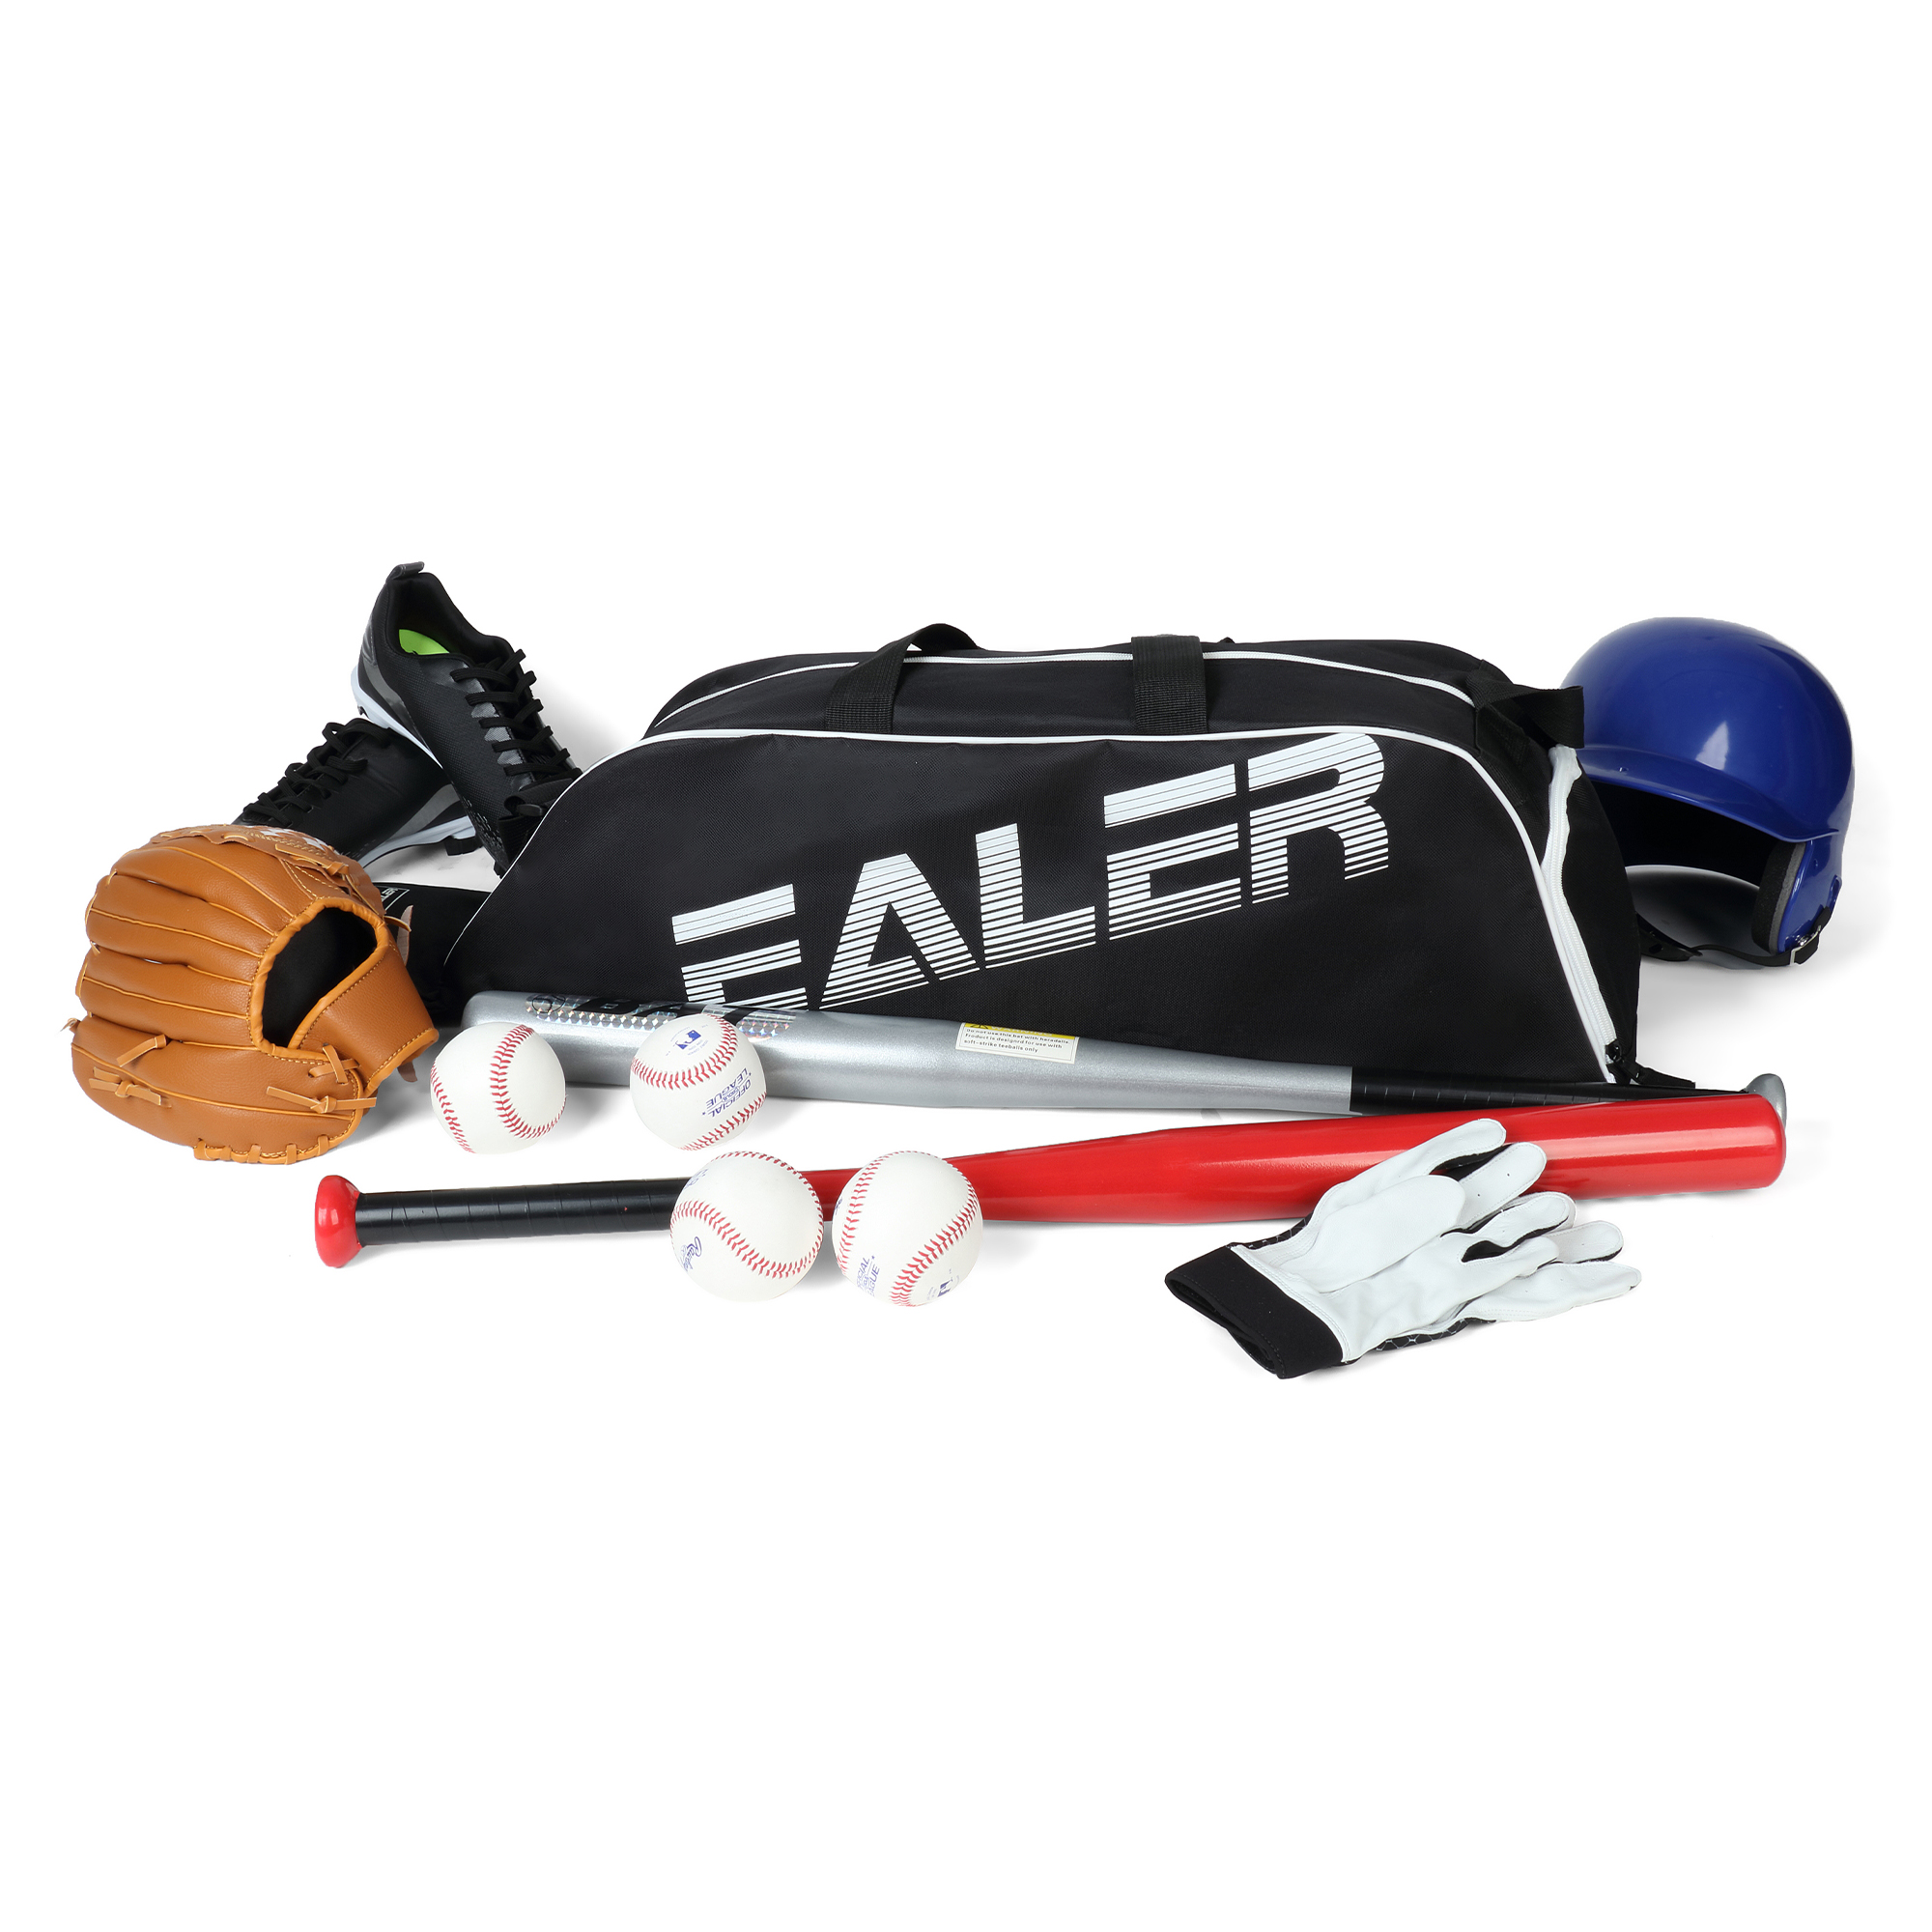 EALER Baseball Bat Tote Bag & T-ball, Softball Equipment Bag